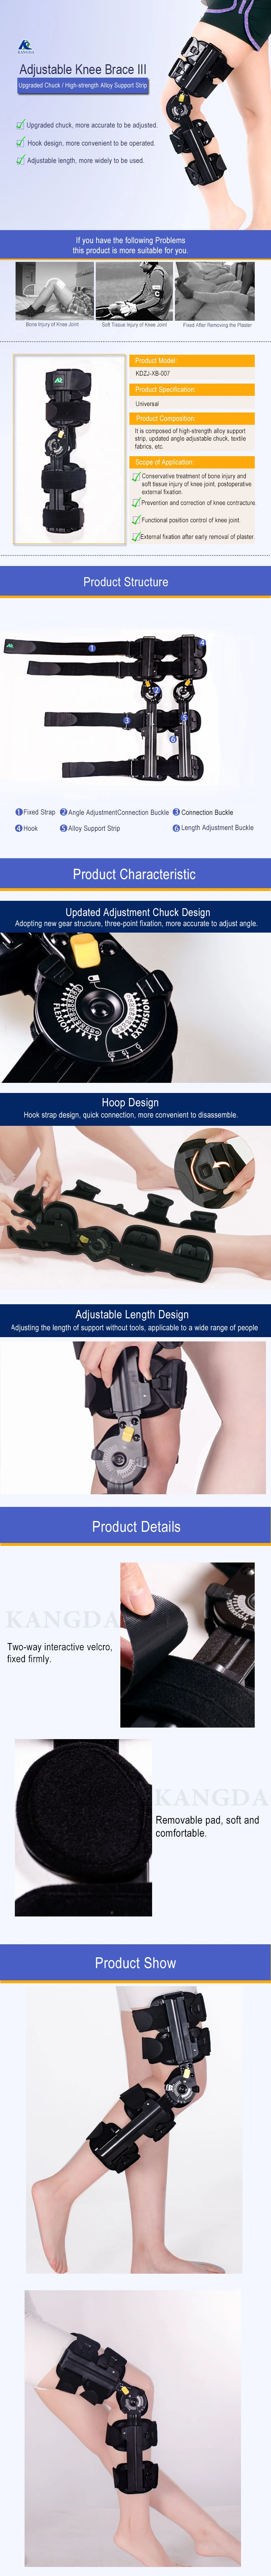 Angle Adjustable ROM Knee Brace Walker Stabilition Hinged Knee Brace